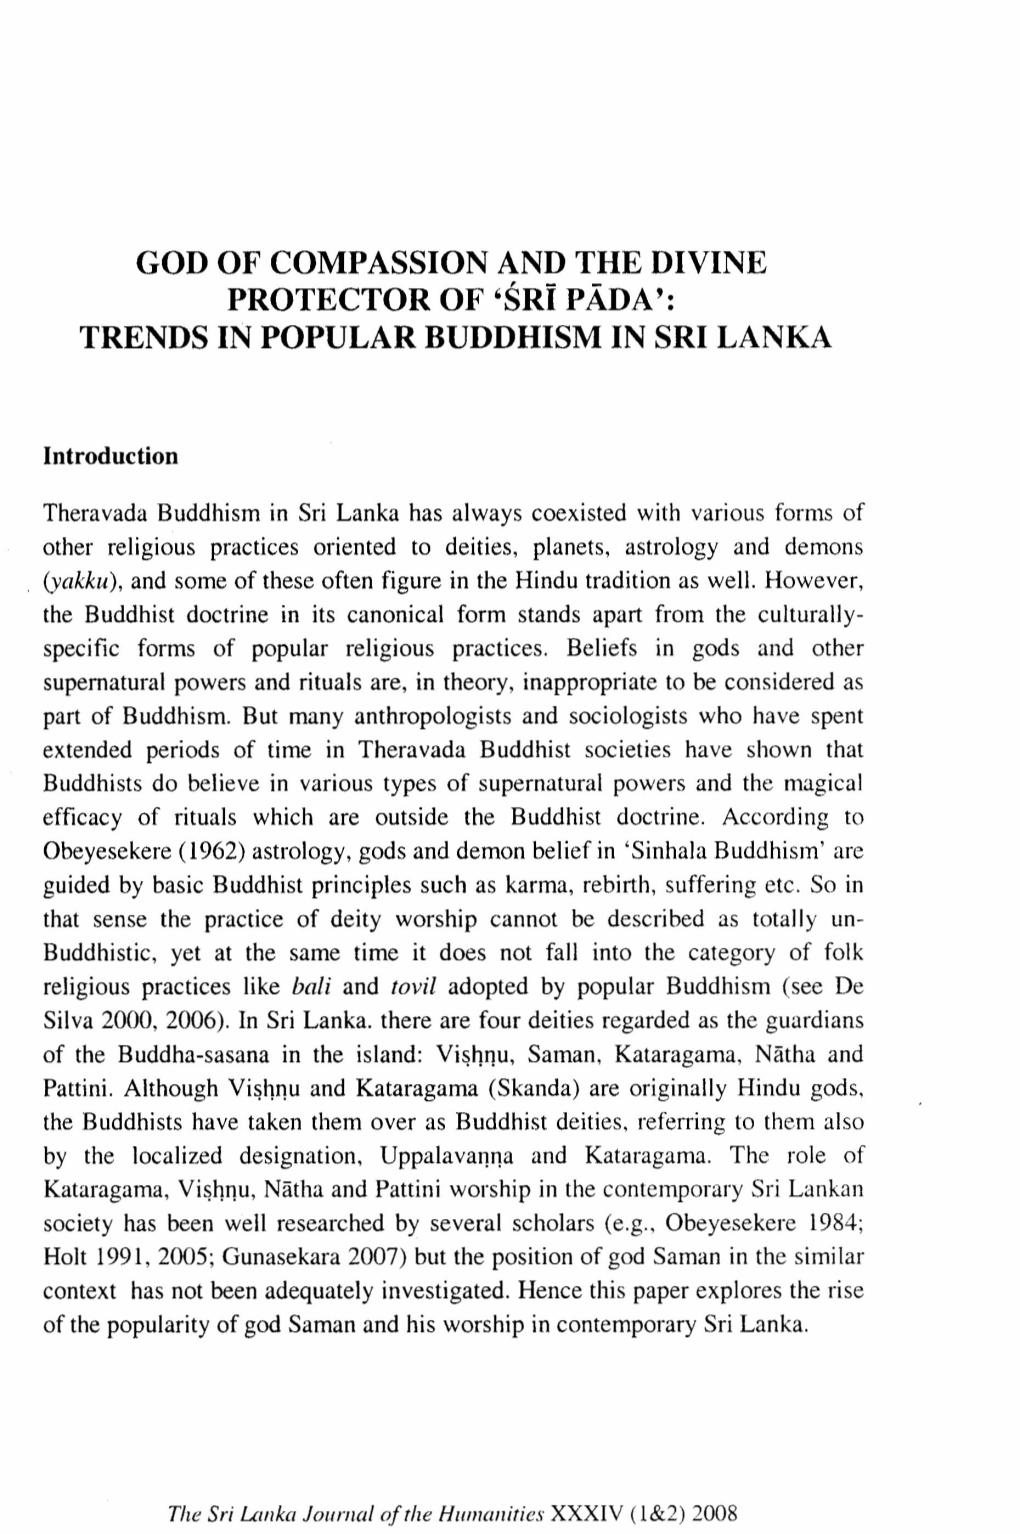 Sri Pada': TRENDS in POPULAR BUDDHISM in SRI LANKA